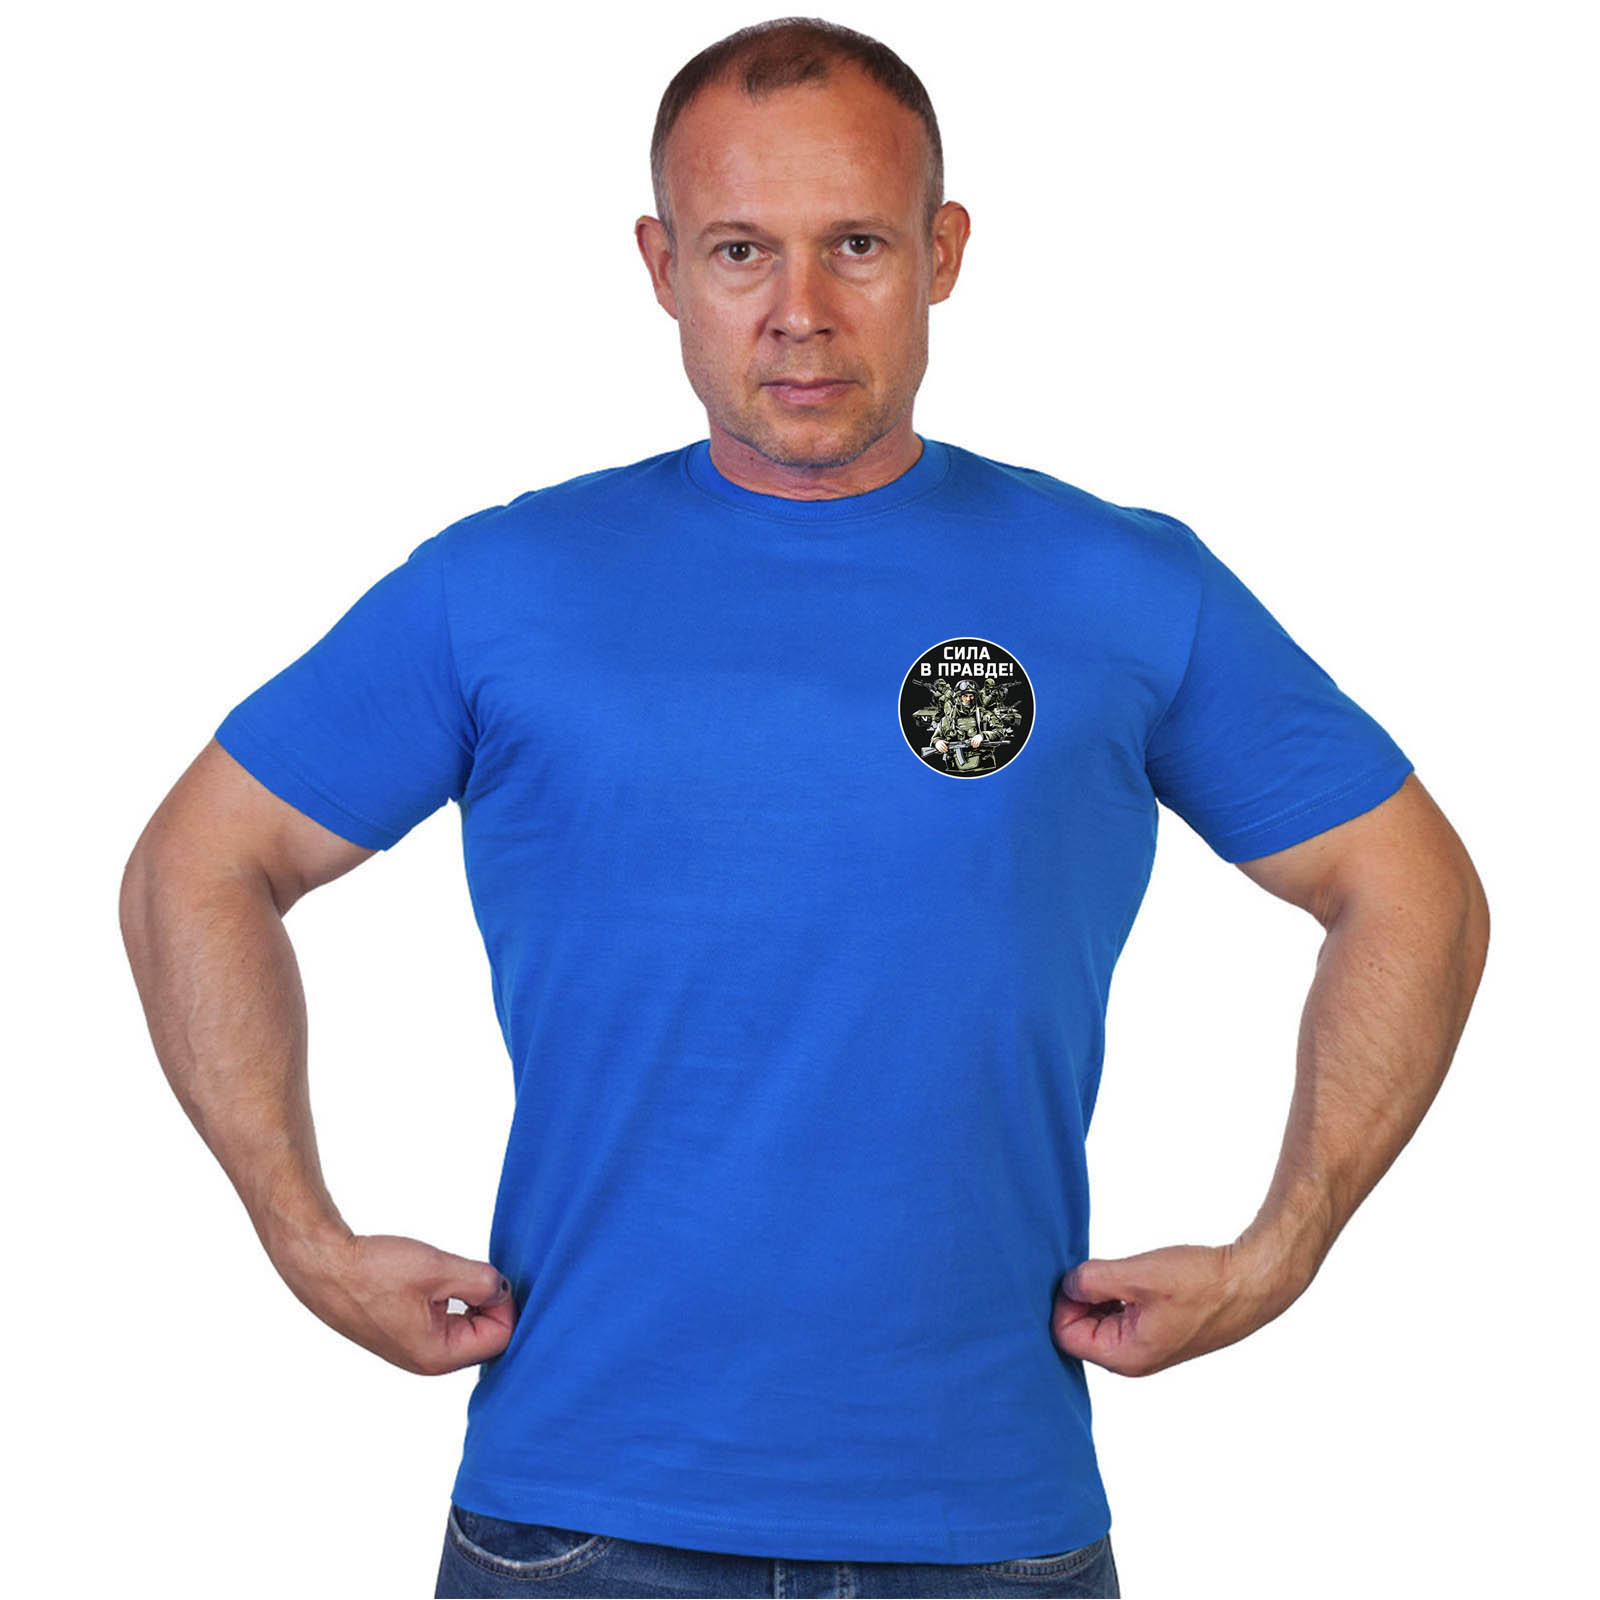 Васильковая футболка с трансфером "Сила в правде!"